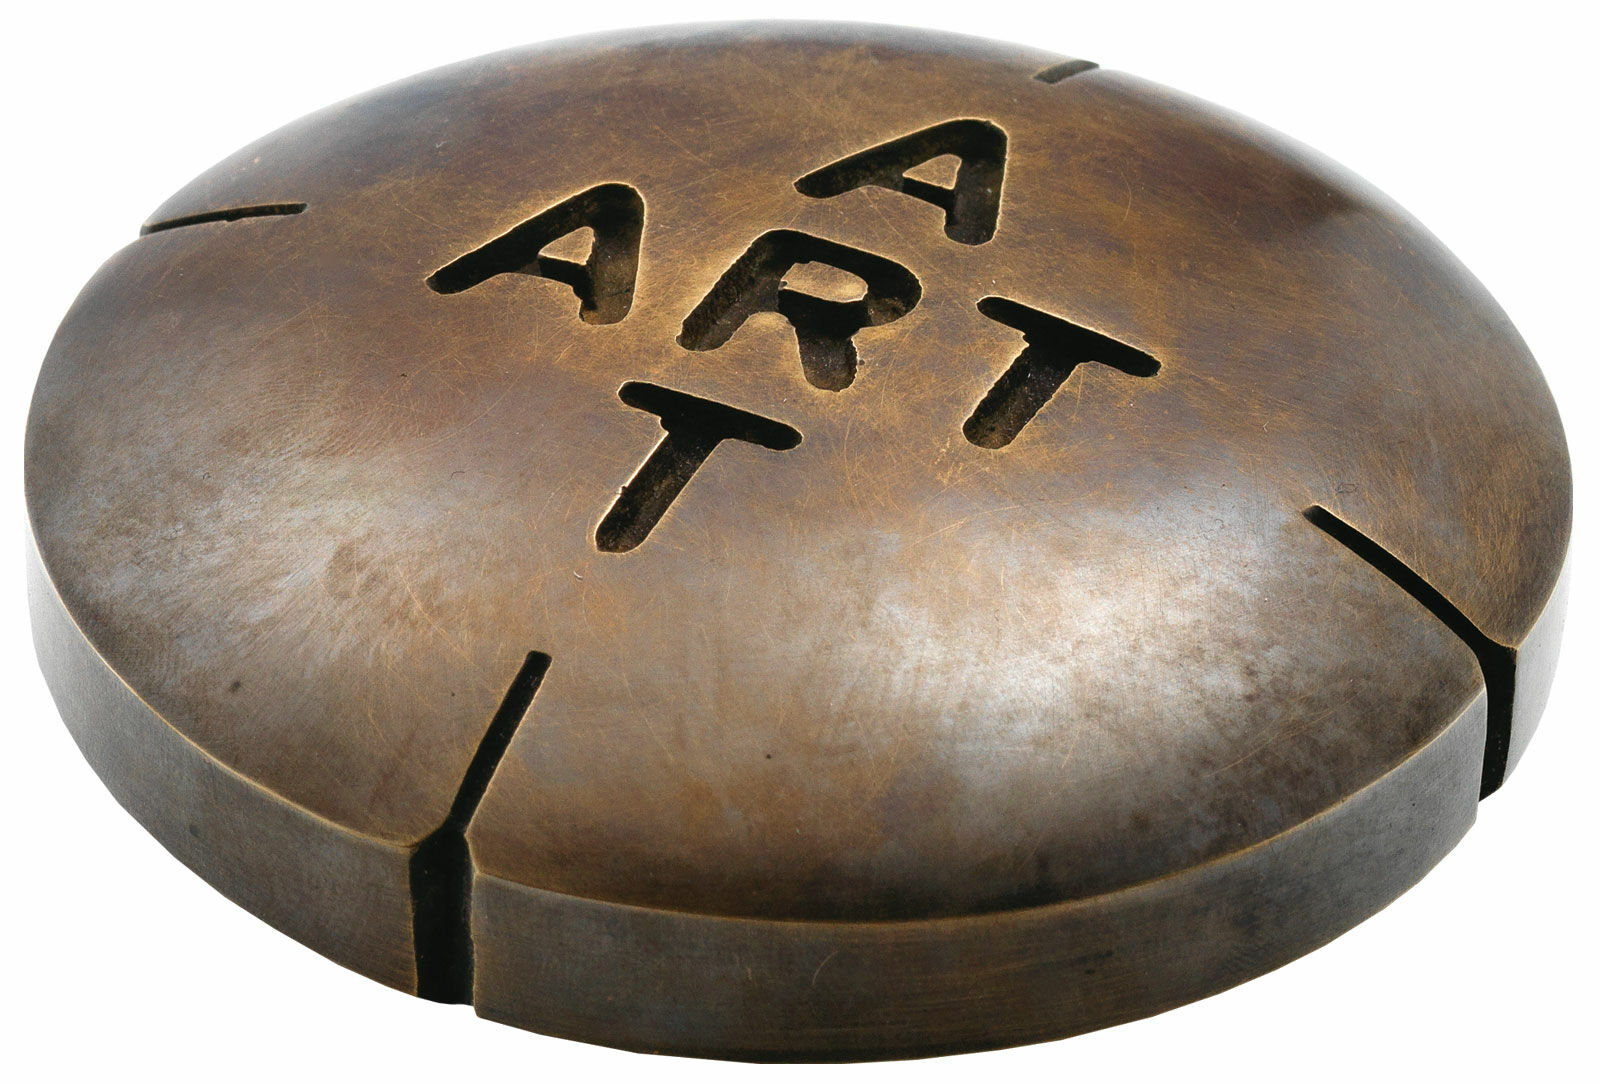 Sculpture "Pill for Art II" (2012), bronze by Amos Plaut